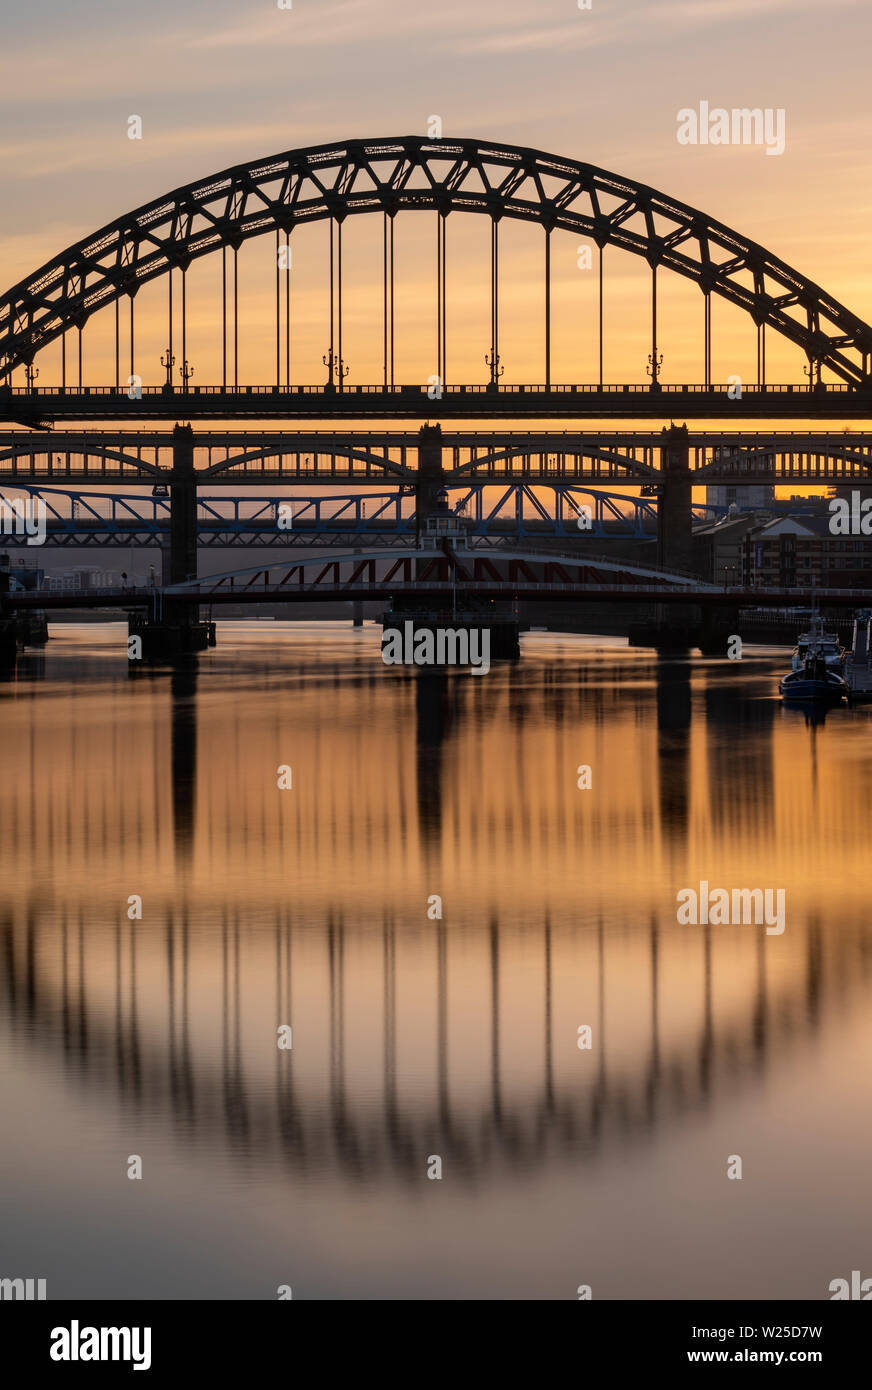 Quatre ponts sur la Tyne, le Tyne Bridge, le pont tournant, le haut niveau et le métro Pont, Newcastle upon Tyne, Angleterre Banque D'Images